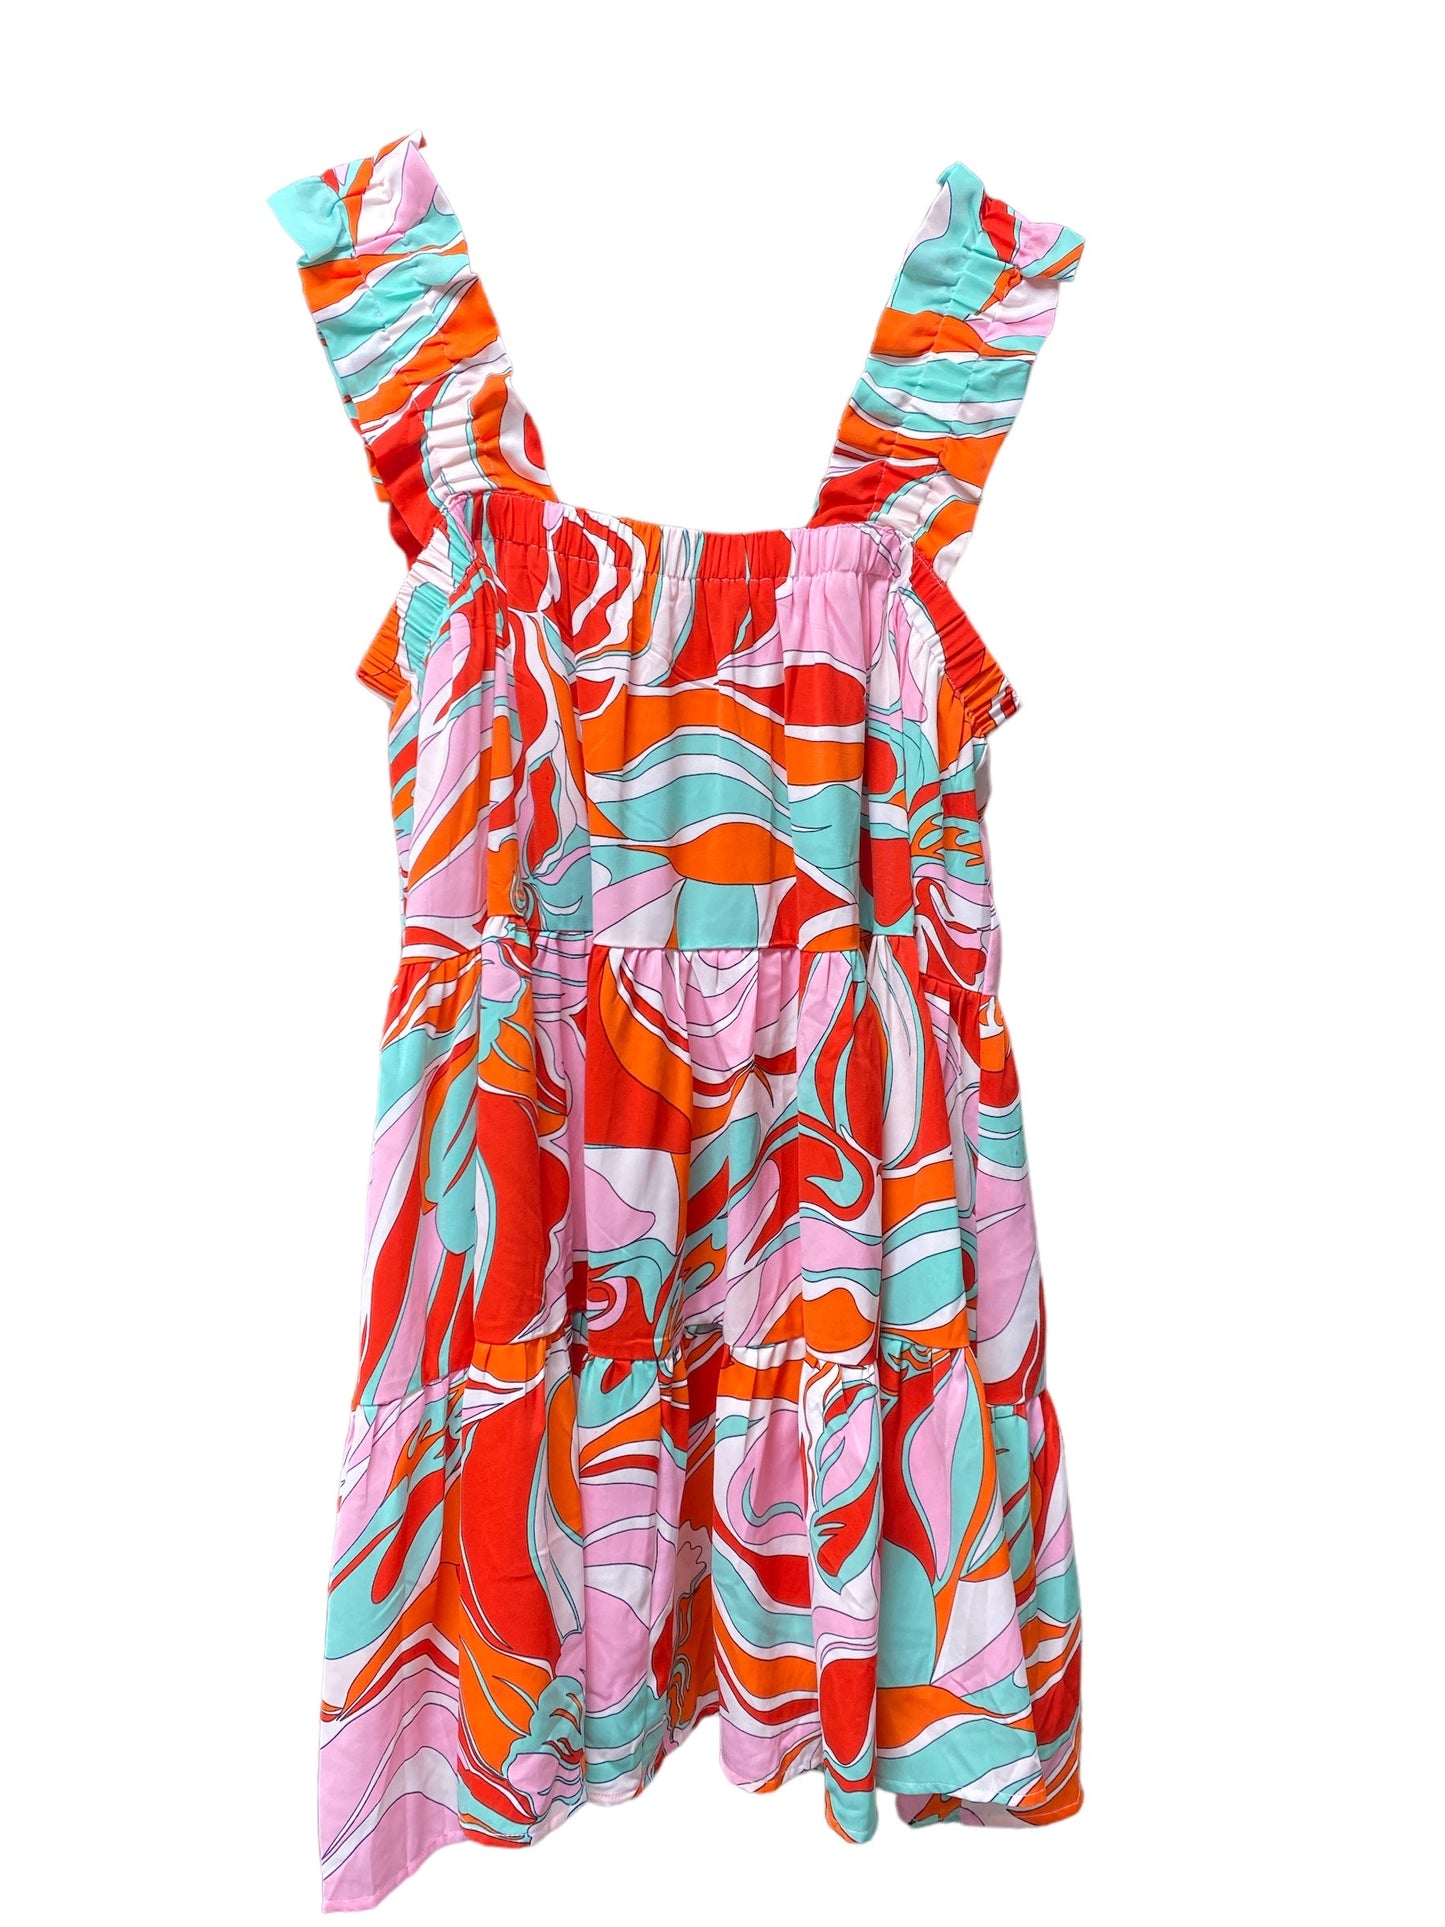 Multi-colored Dress Casual Short Entro, Size L